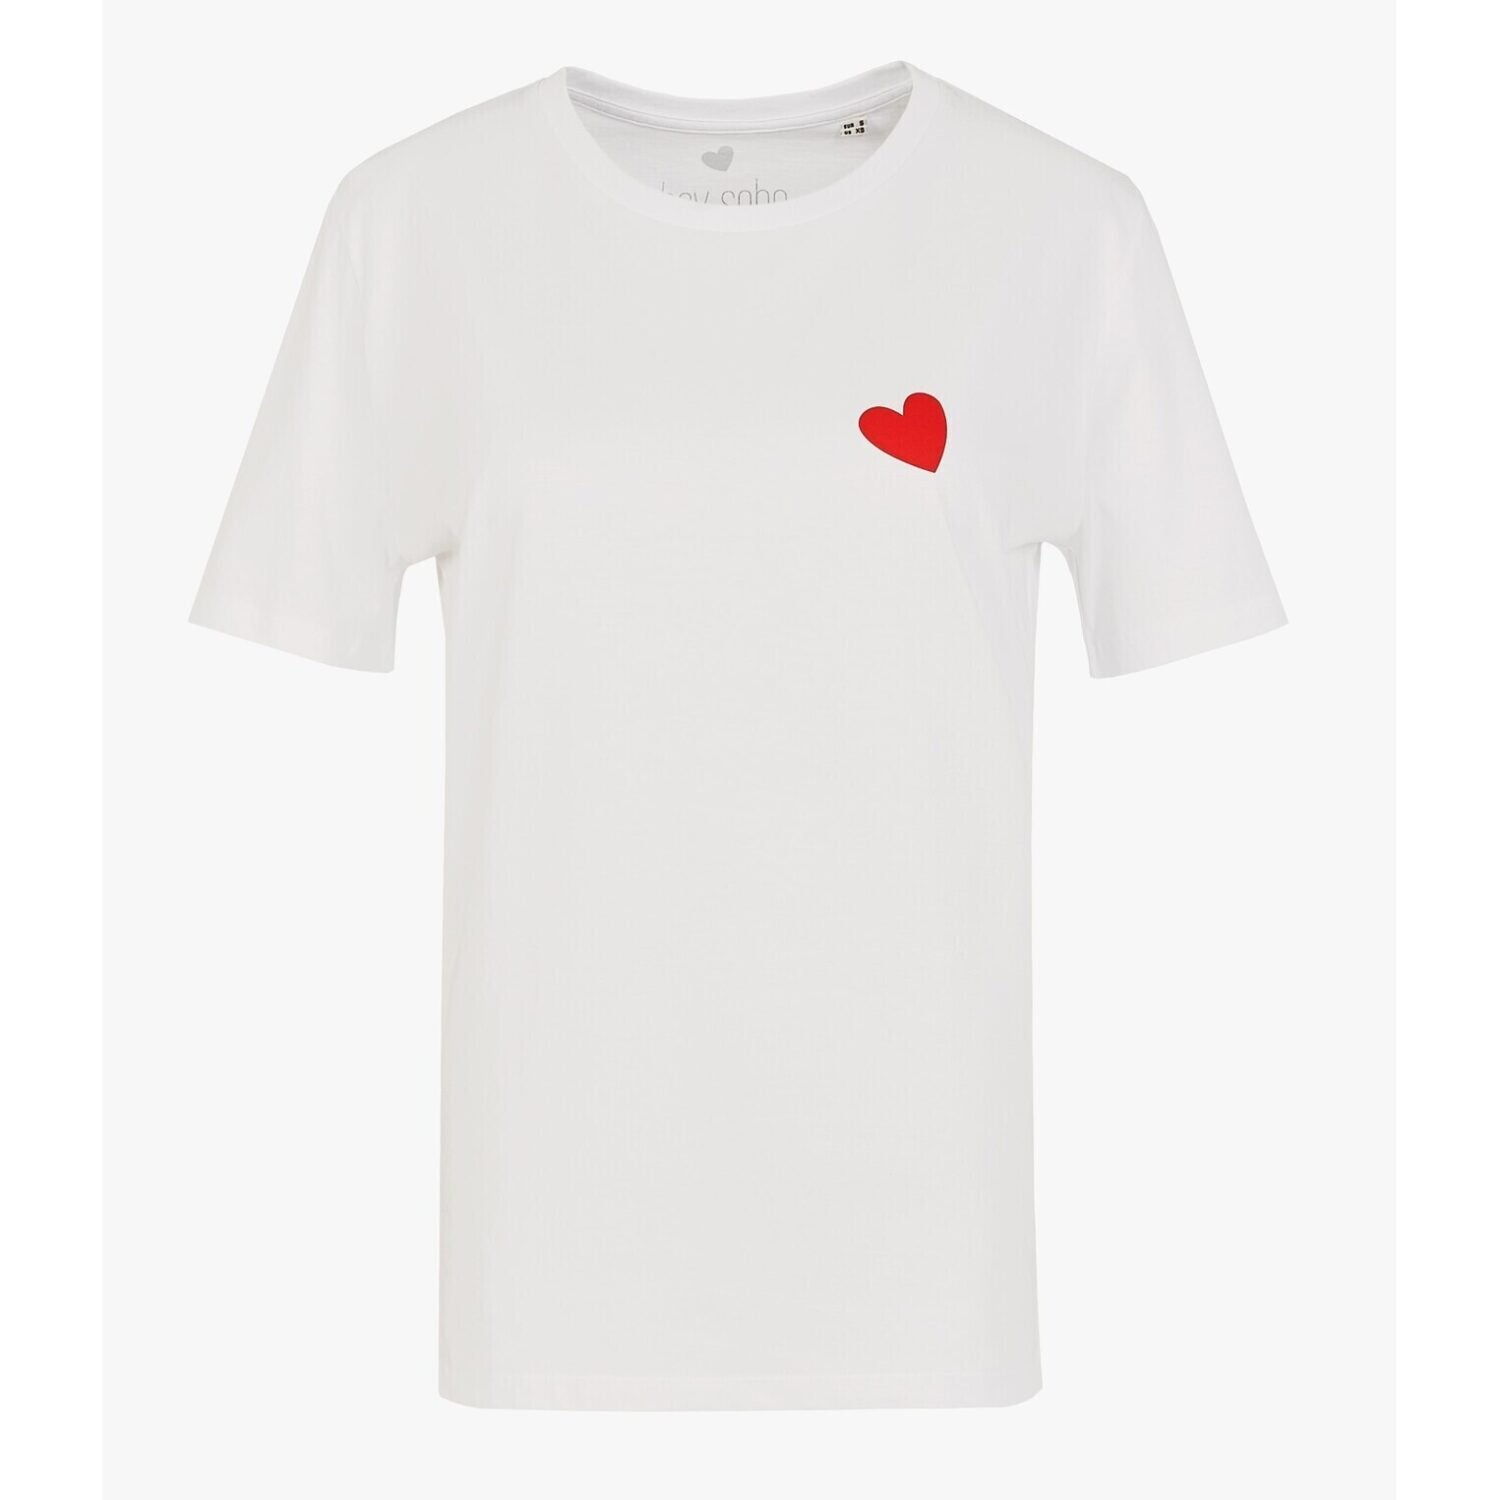 Hey Soho T-Shirt Red Heart